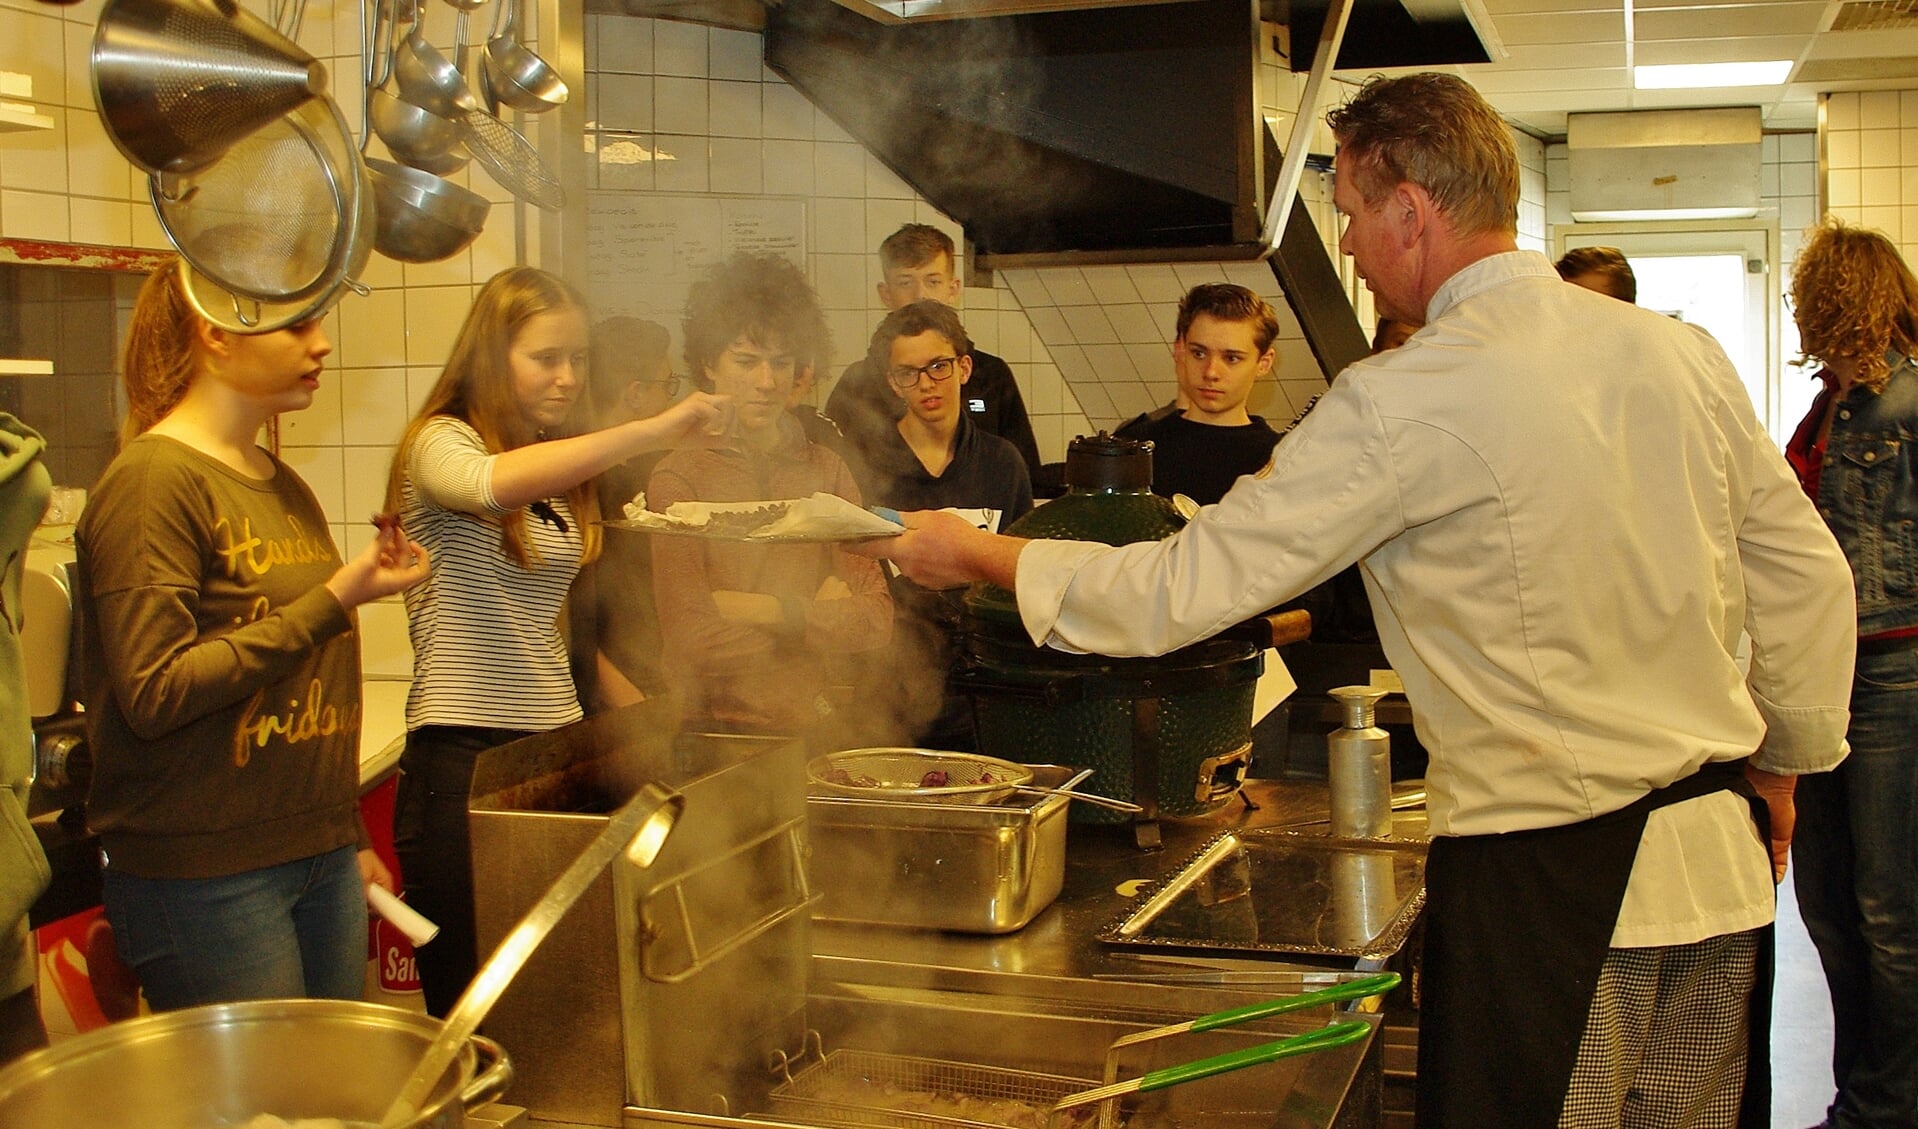 De leerlingen proefden onder andere chips van aardappeltruffel bij De Jonker. | Foto Willemien Timmers